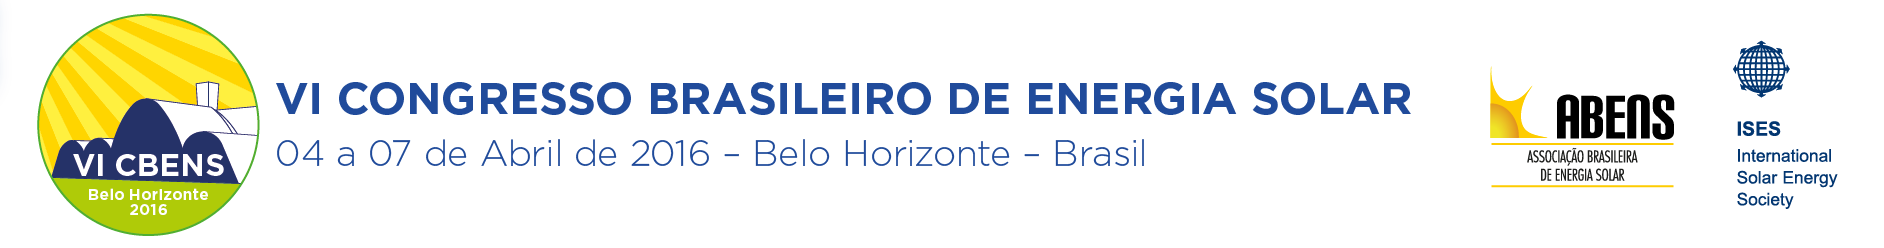 VI CBENS: VI CONGRESSO BRASILEIRO DE ENERGIA SOLAR E VII CONGRESSO LATINO AMERICANO DE ENERGIA SOLAR. 04 a 07 de Abril de 2016 – Belo Horizonte – Brasil